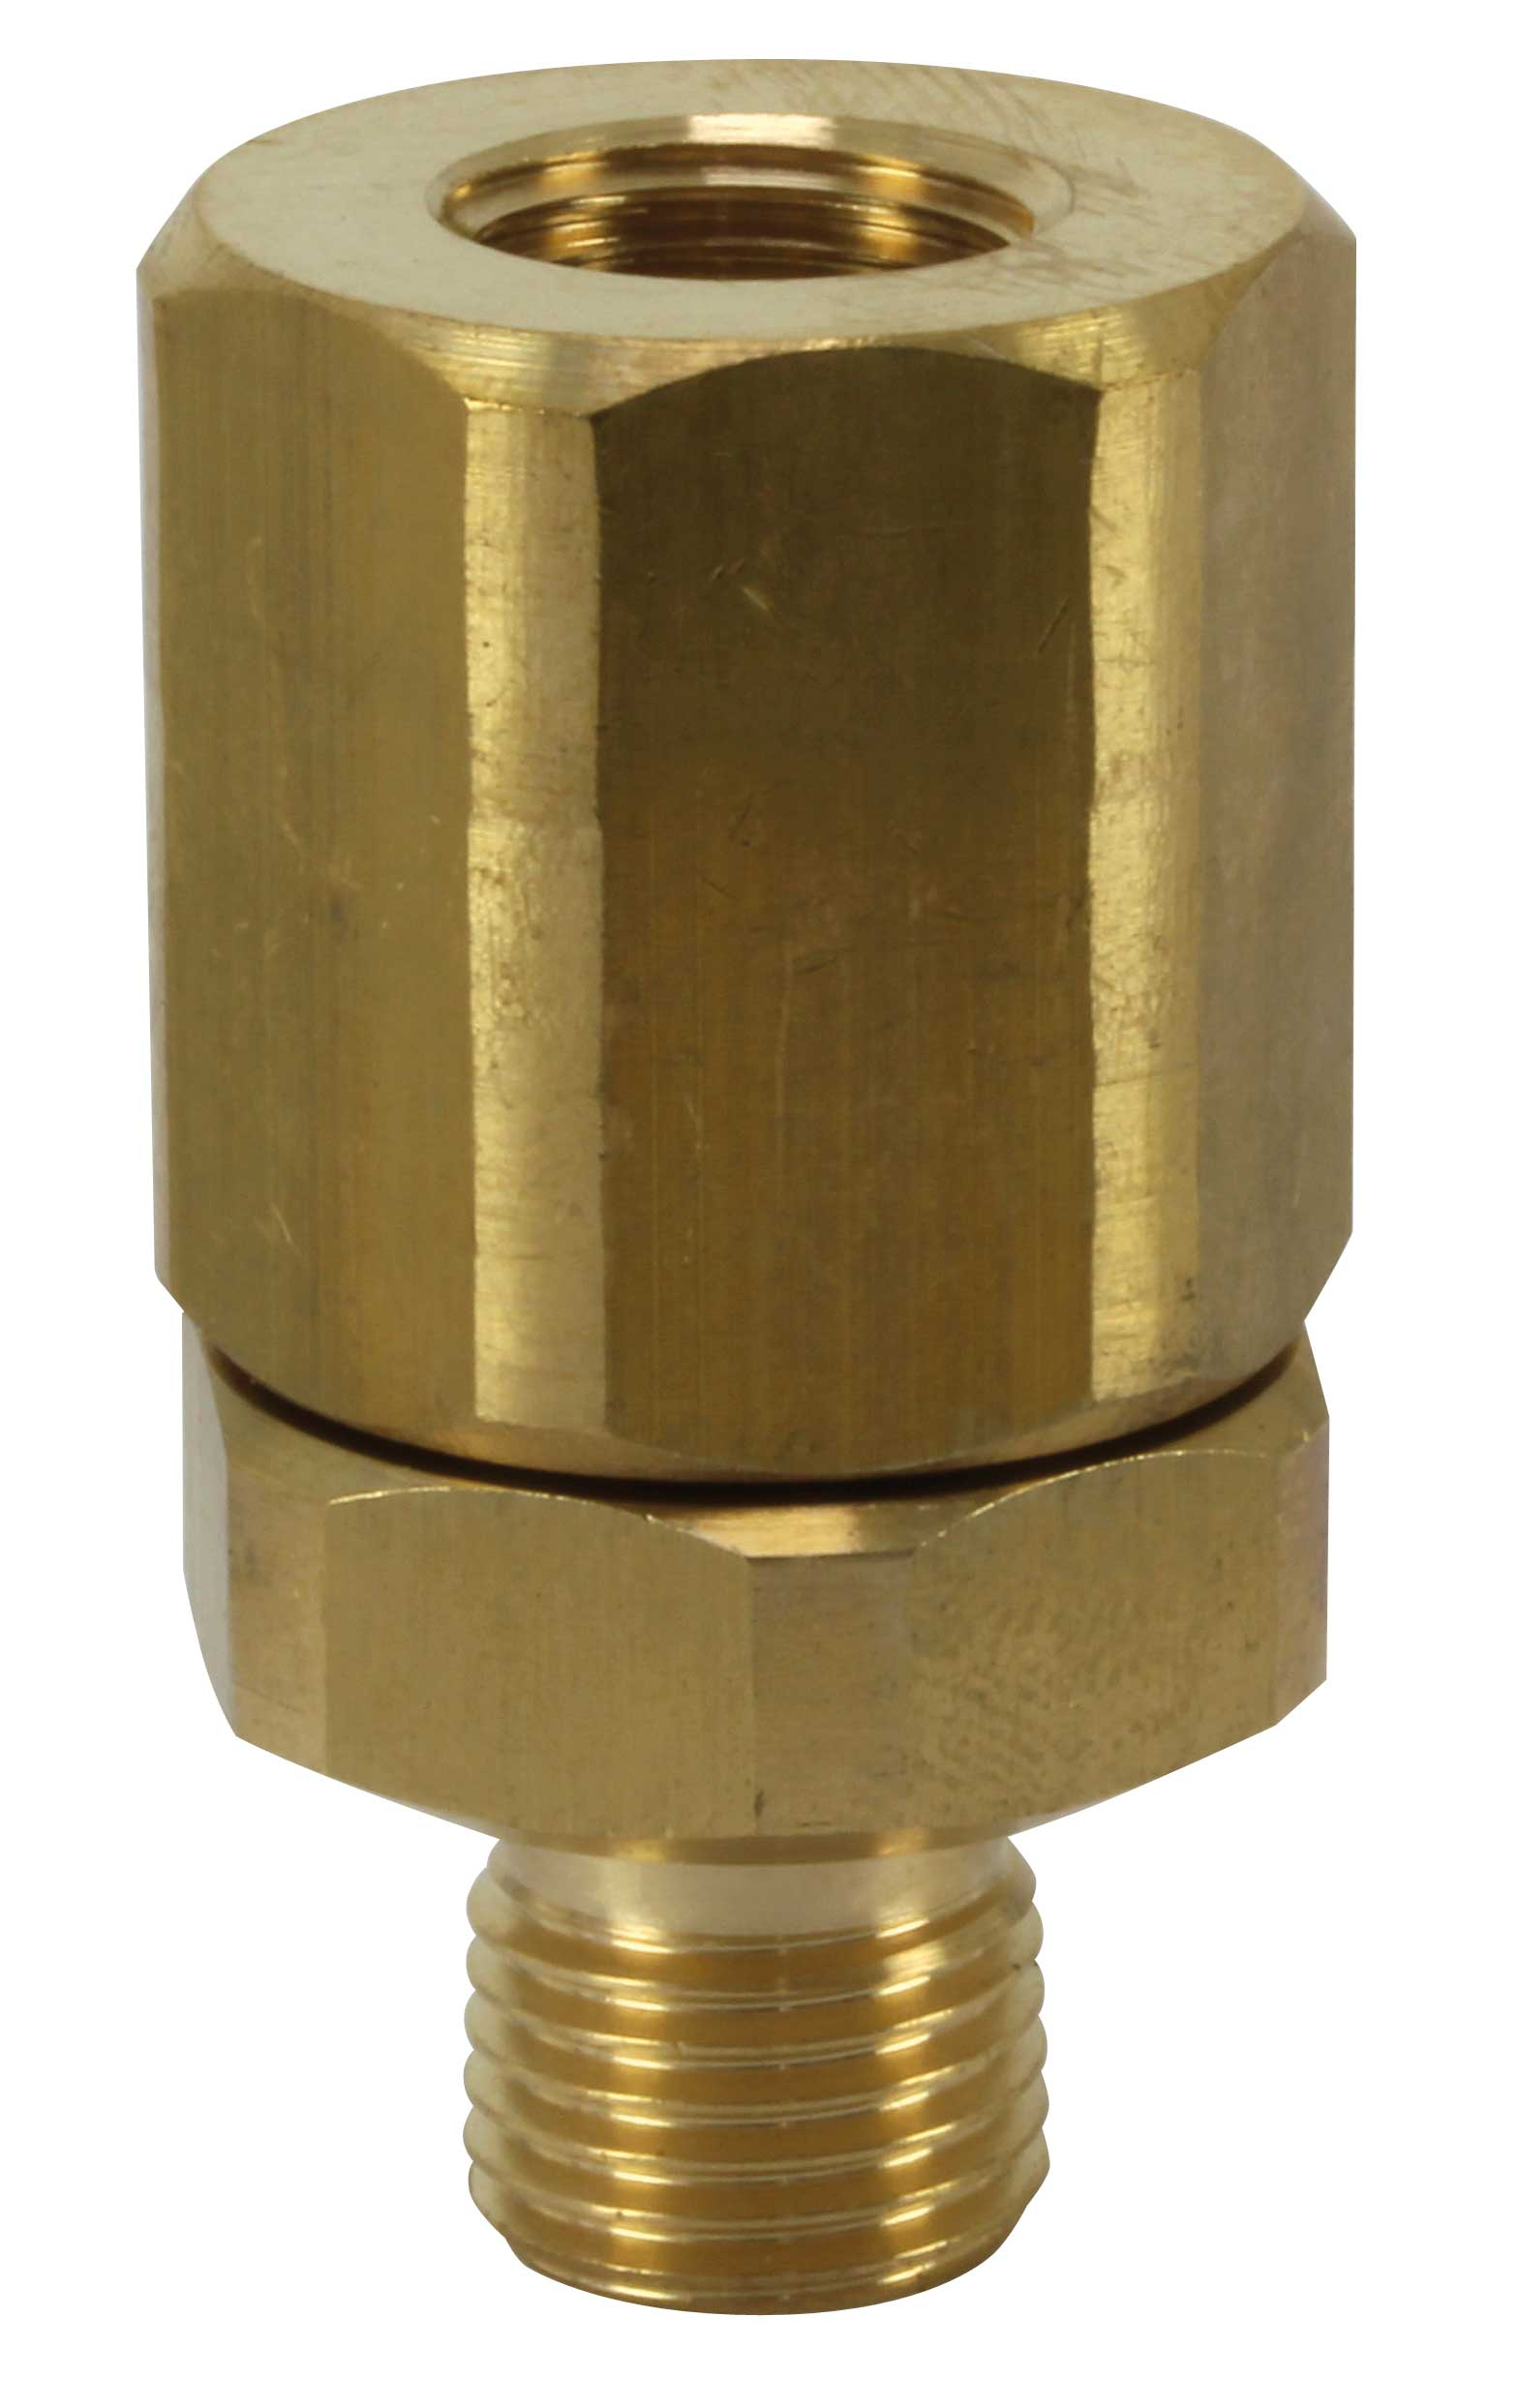 Filtre haute pression ST-33 - 1/4 Femelle - 1/4 Mâle - Laiton, avec tamis en acier inoxydable. À usage bidirectionnel.